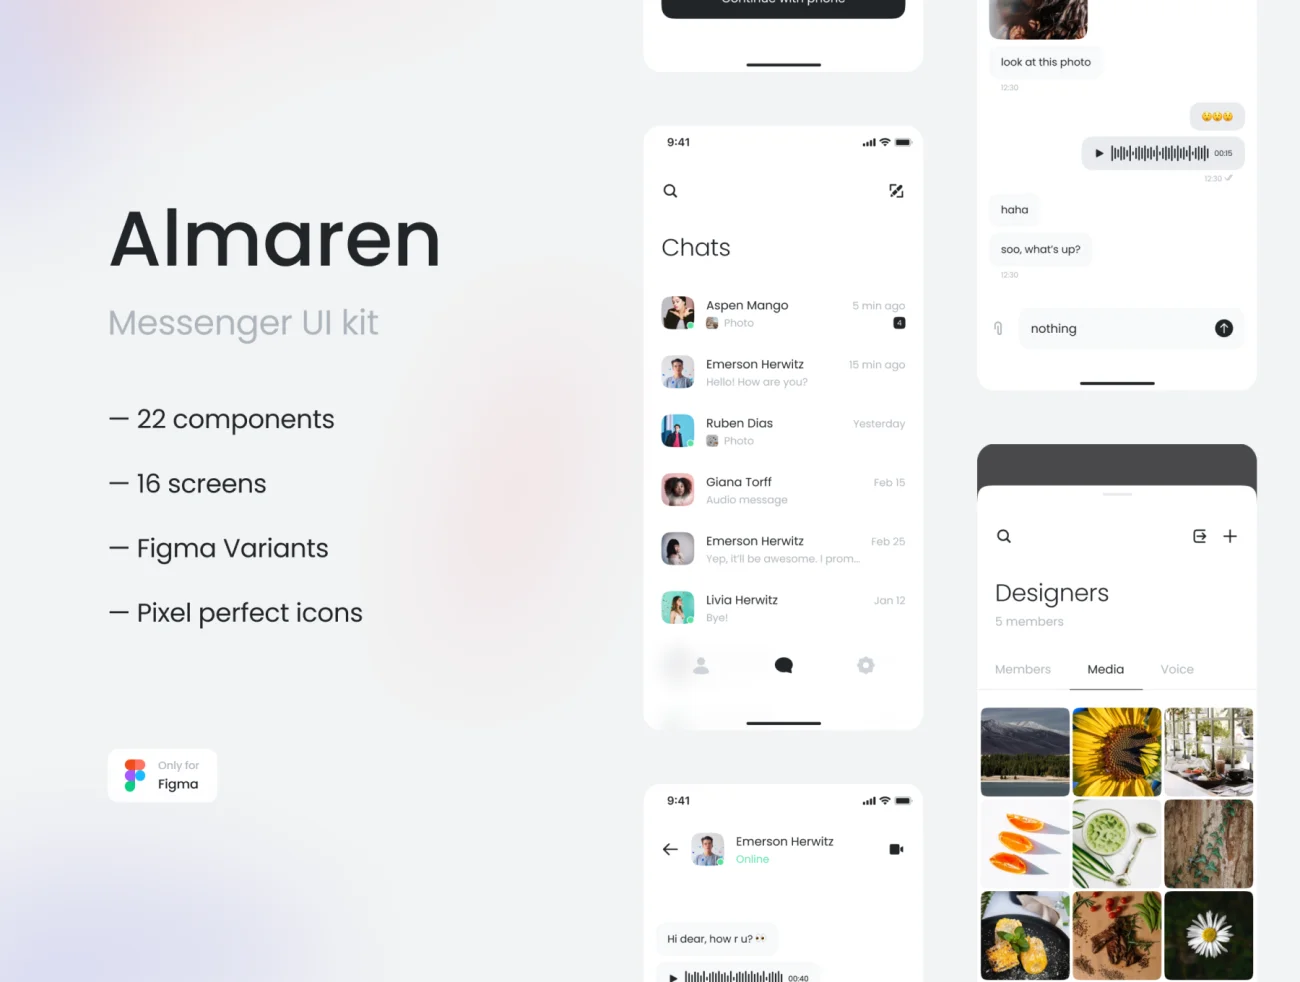 16屏Figma通讯沟通应用 iOS UI 套件 Almaren- Messenger UI Kit插图3